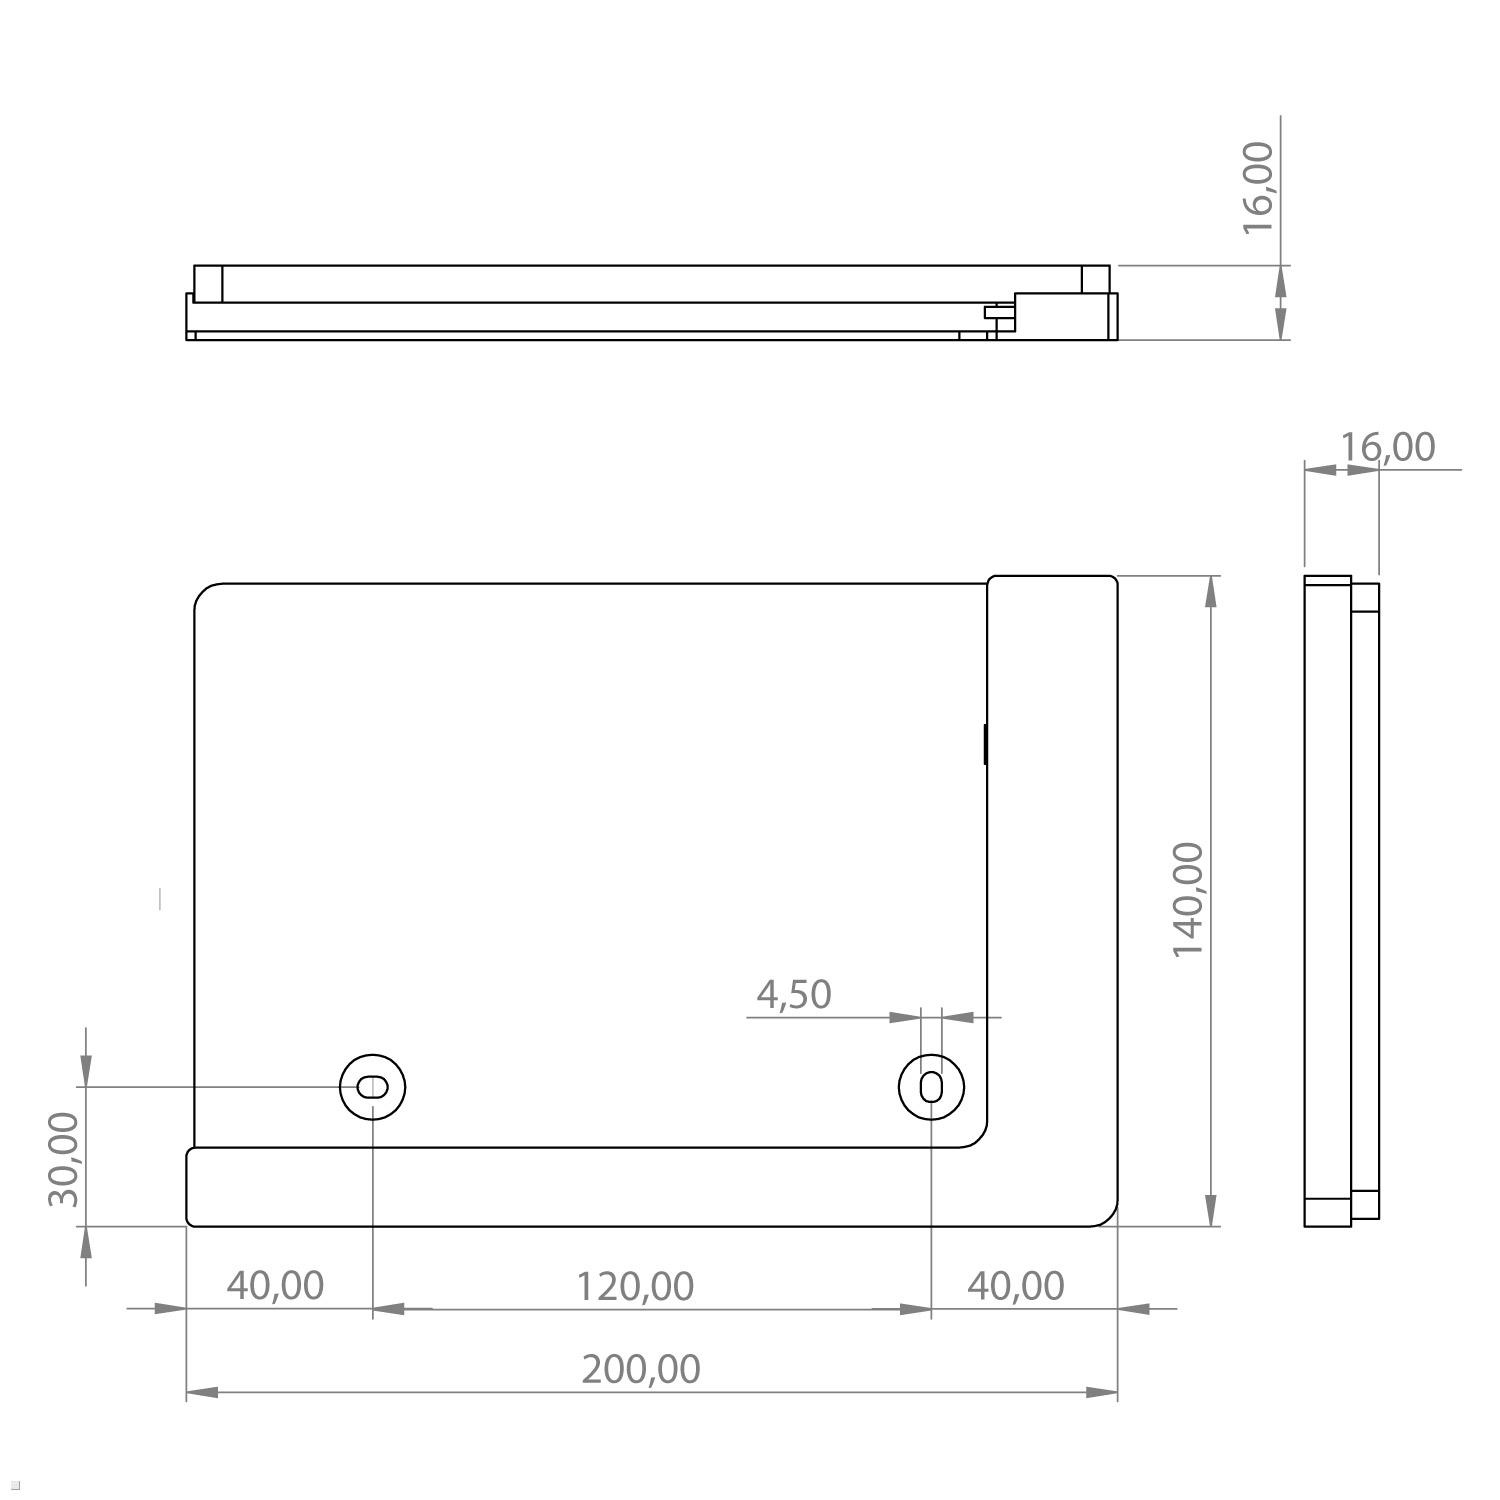 TABLINES TWP für Samsung S7+ Wandhalterung, weiß mit Ladefunktion Tablethalter Tablet Tab 12.4